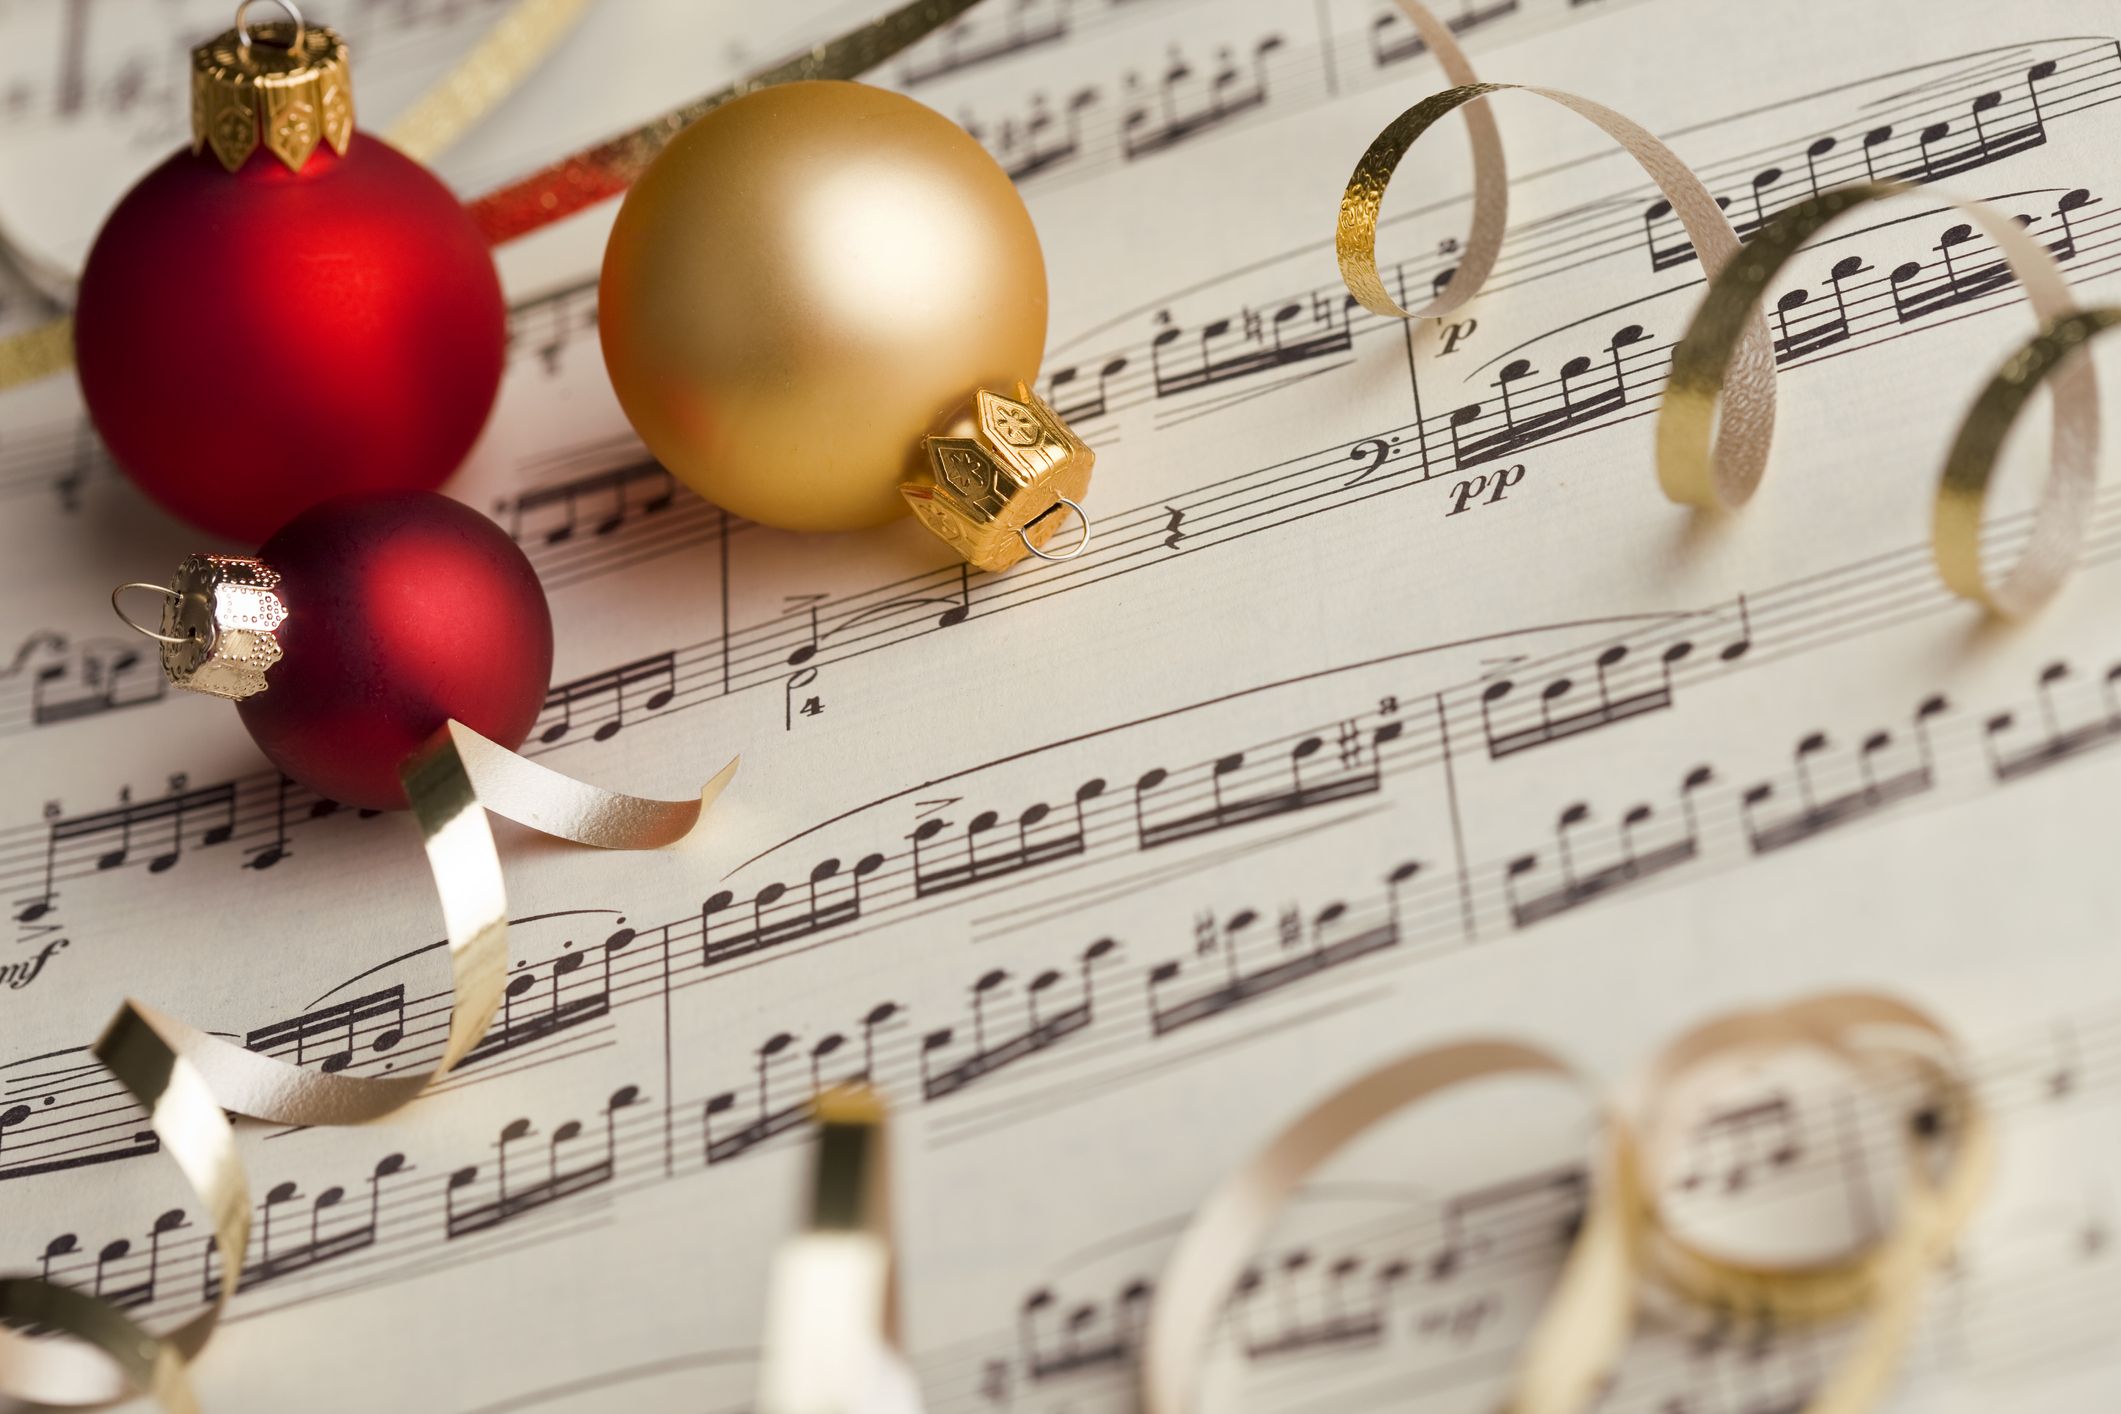 Danh sách nhạc Giáng Sinh 50 bài hát cổ điển sẽ khiến bạn hoàn toàn lạc quan và hạnh phúc. Cảm nhận sự lung linh, tuyết rơi và buổi sáng Giáng Sinh lấp lánh như mơ. Playlist này đem lại cho bạn niềm vui và niềm hạnh phúc, giúp bạn đón một mùa Giáng Sinh vô cùng ý nghĩa. Hãy cùng lắng nghe và thưởng thức những giai điệu đầy đam mê.